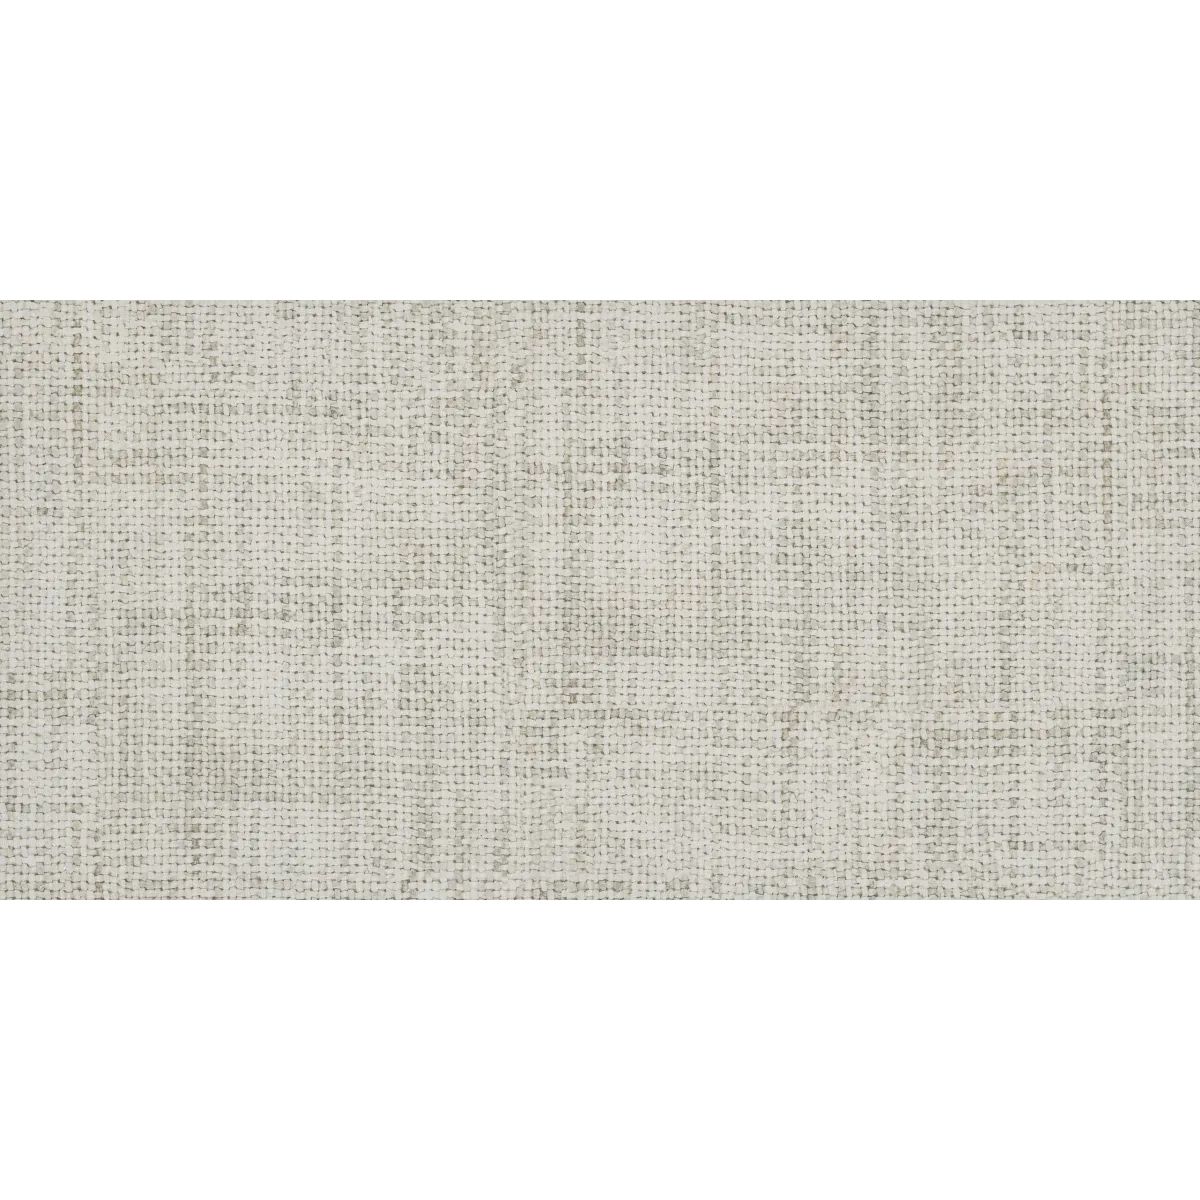 Tektile - 12" x 24" Rectangle Floor Tile - Matte Visual - Sold by Carton (14 SF/Carton) | Build.com, Inc.